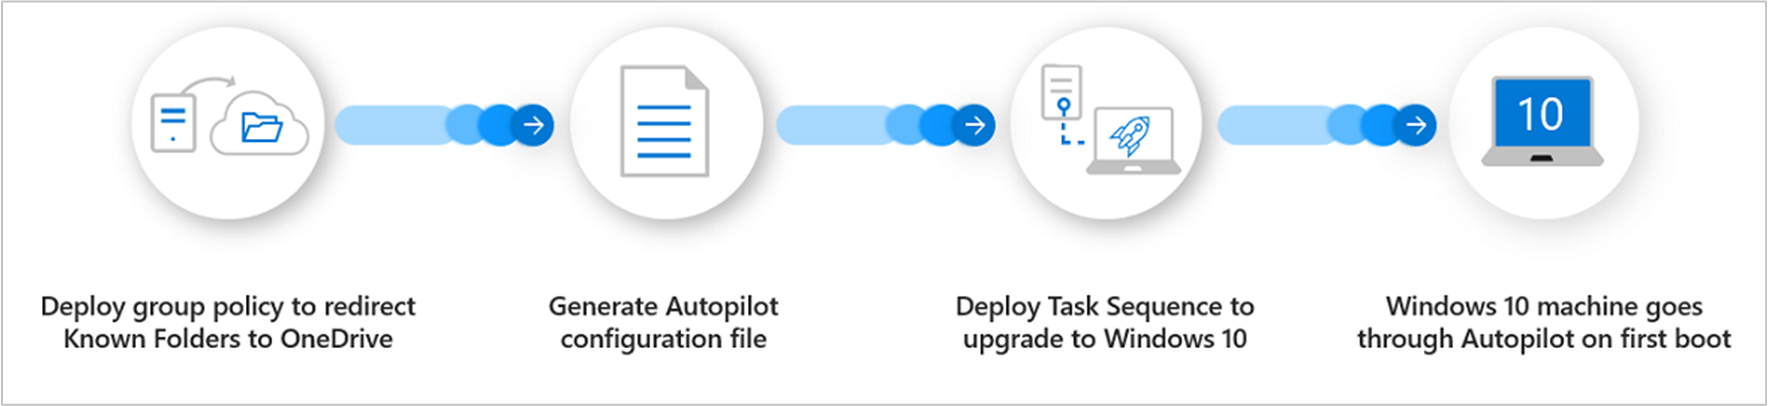 Přehled procesů pro Windows Autopilot pro stávající zařízení